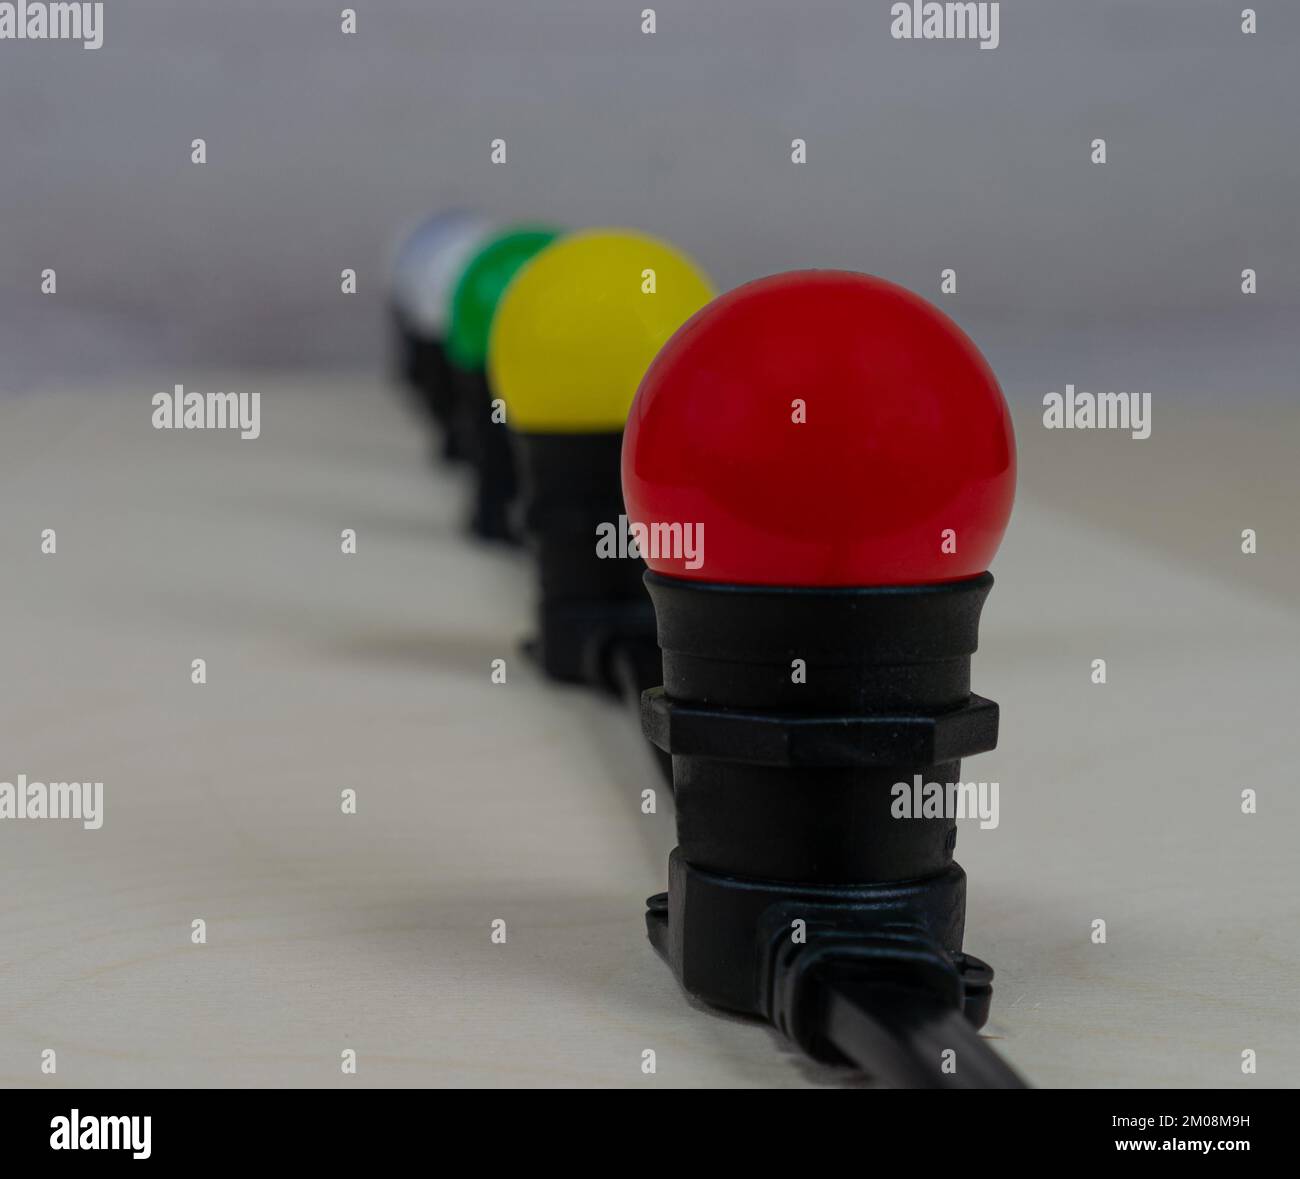 Weihnachtsgarland-Gürtelleuchte mit Lampen in verschiedenen Farben in Reihe Stockfoto